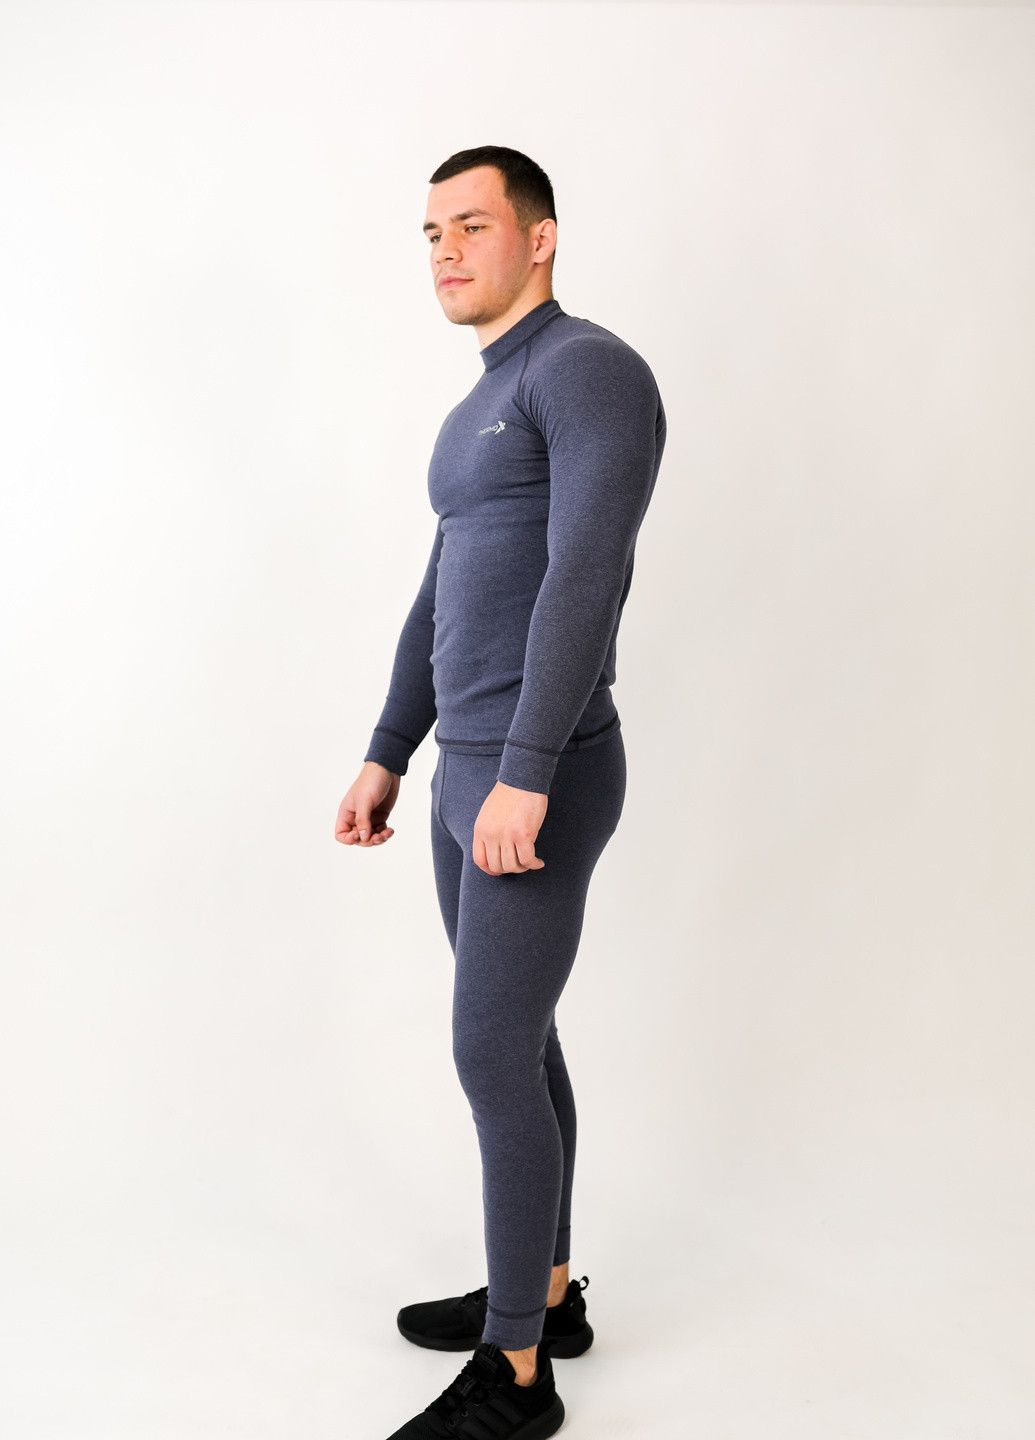 Комплект чоловічої термобілизни ThermoX rapid jeans (248204402)